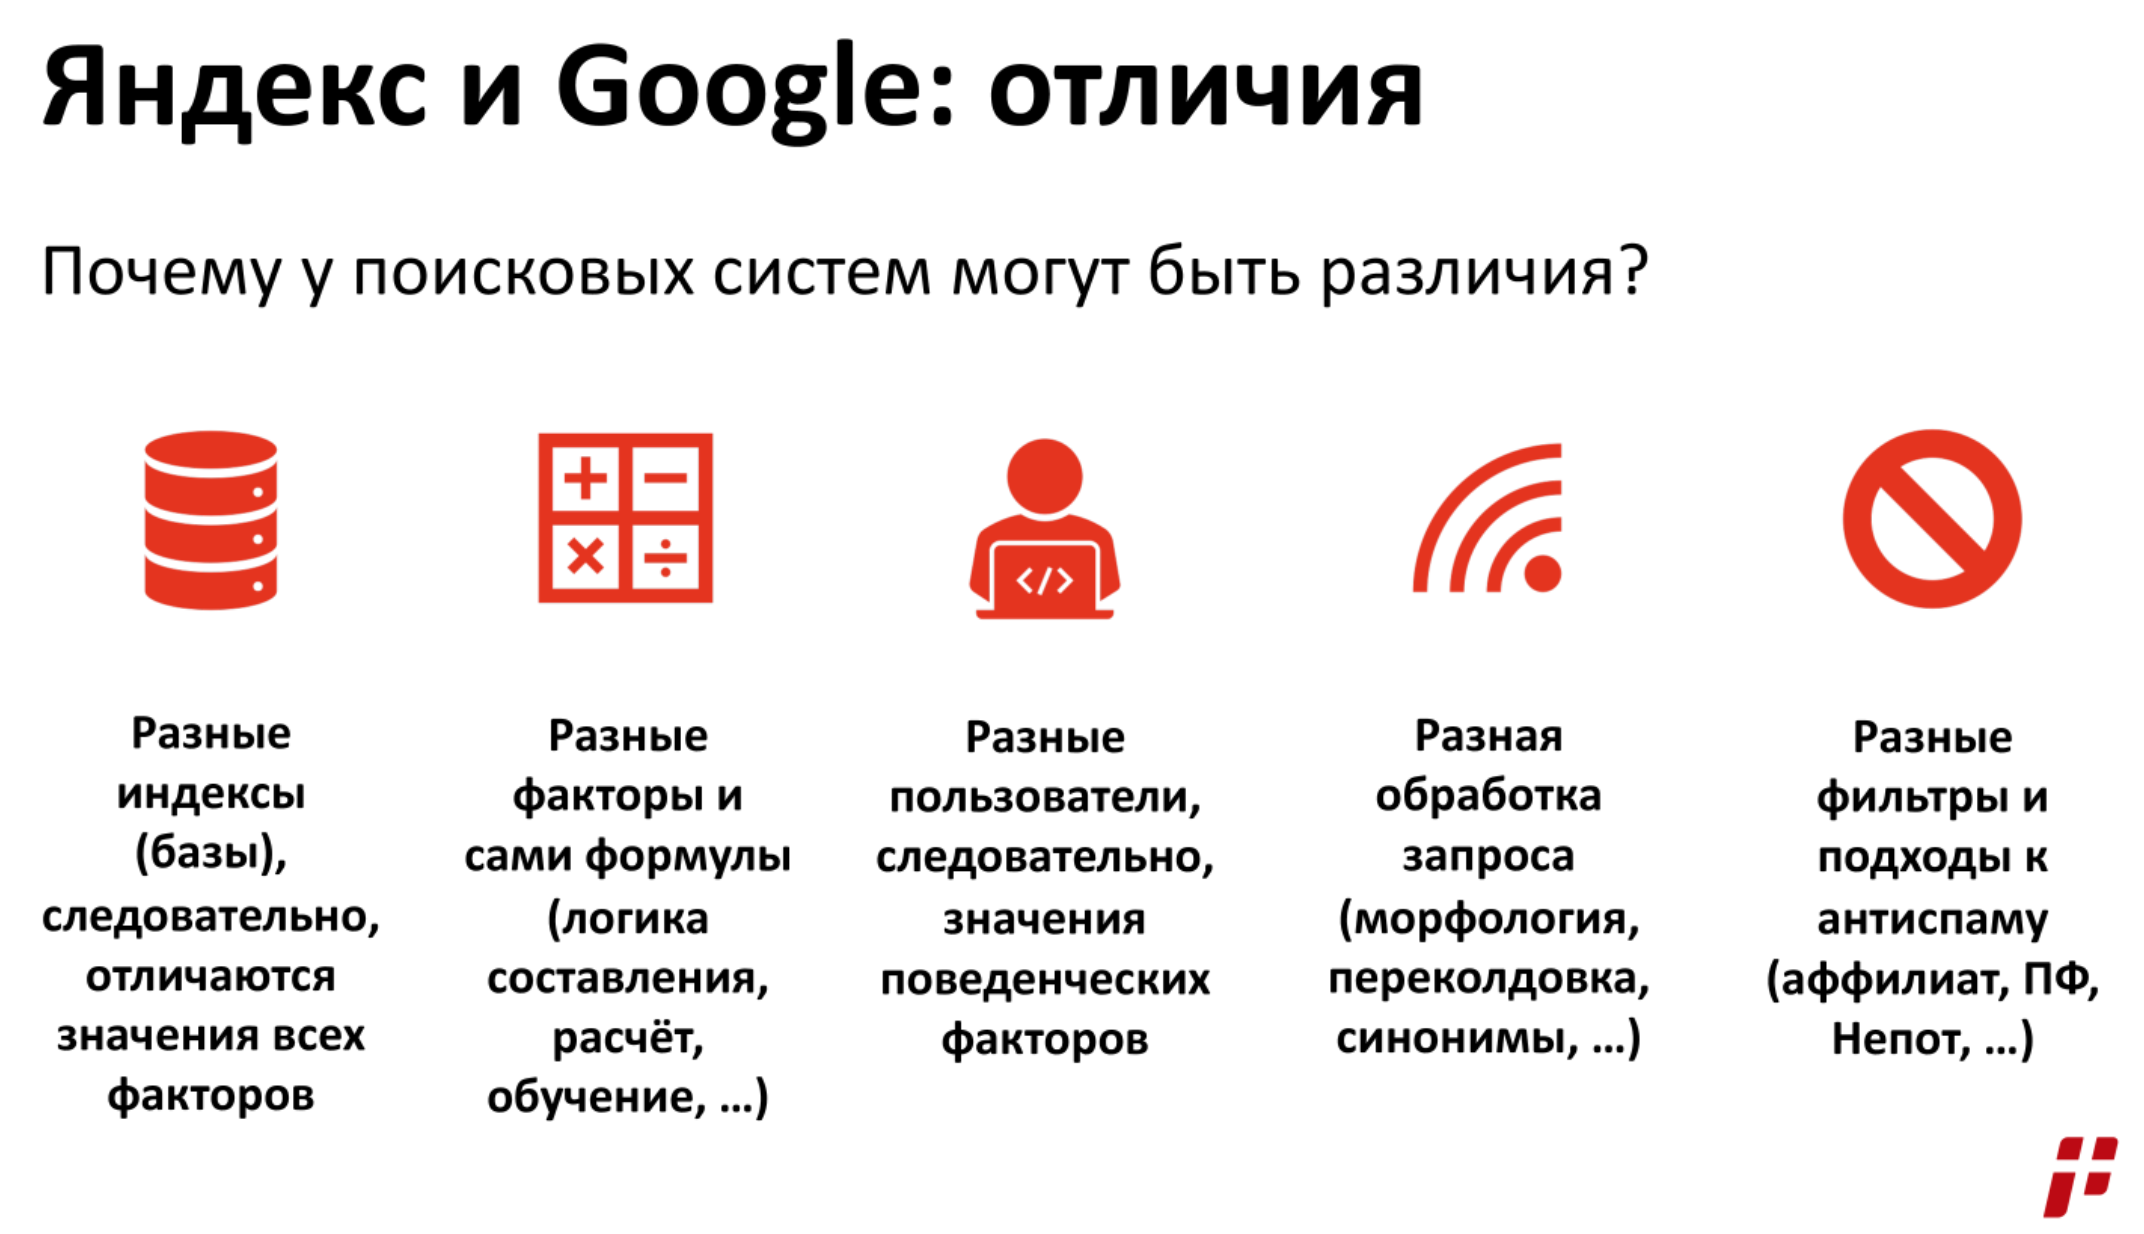 Отличия в продвижение под Яндекс и Google